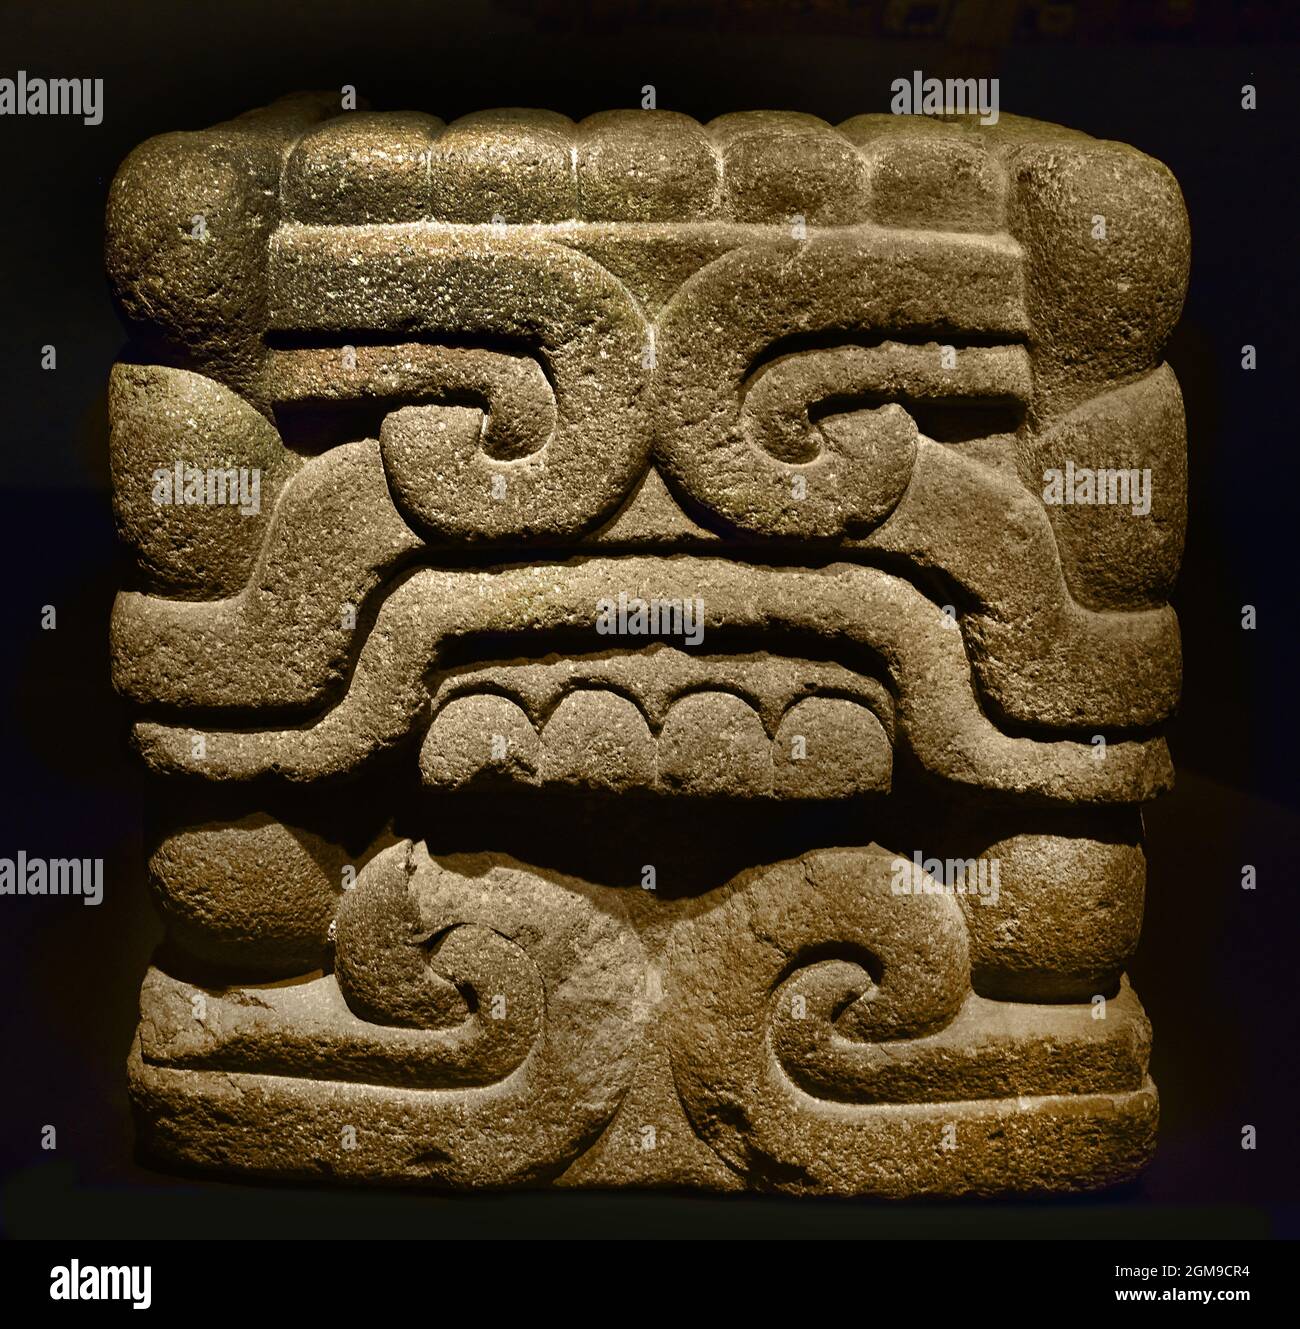 Schlangenkopf wahrscheinlich aus einer gefiederten Schlange 1350-1521 (stammt aus einem dem Gott Quetzalcoatl gewidmeten Gebäude) Rautenstrauchch Joest Museum, Azteken ( Azteken, mesoamerikanische Kultur, Zentralmexiko 1300 bis 1521 (14.-16. Jahrhundert), Aztekenreich, Tenochtitlan, Stadtstaat der Mexica , Tenochca, Texcoco, Tlacopan, ) Stockfoto